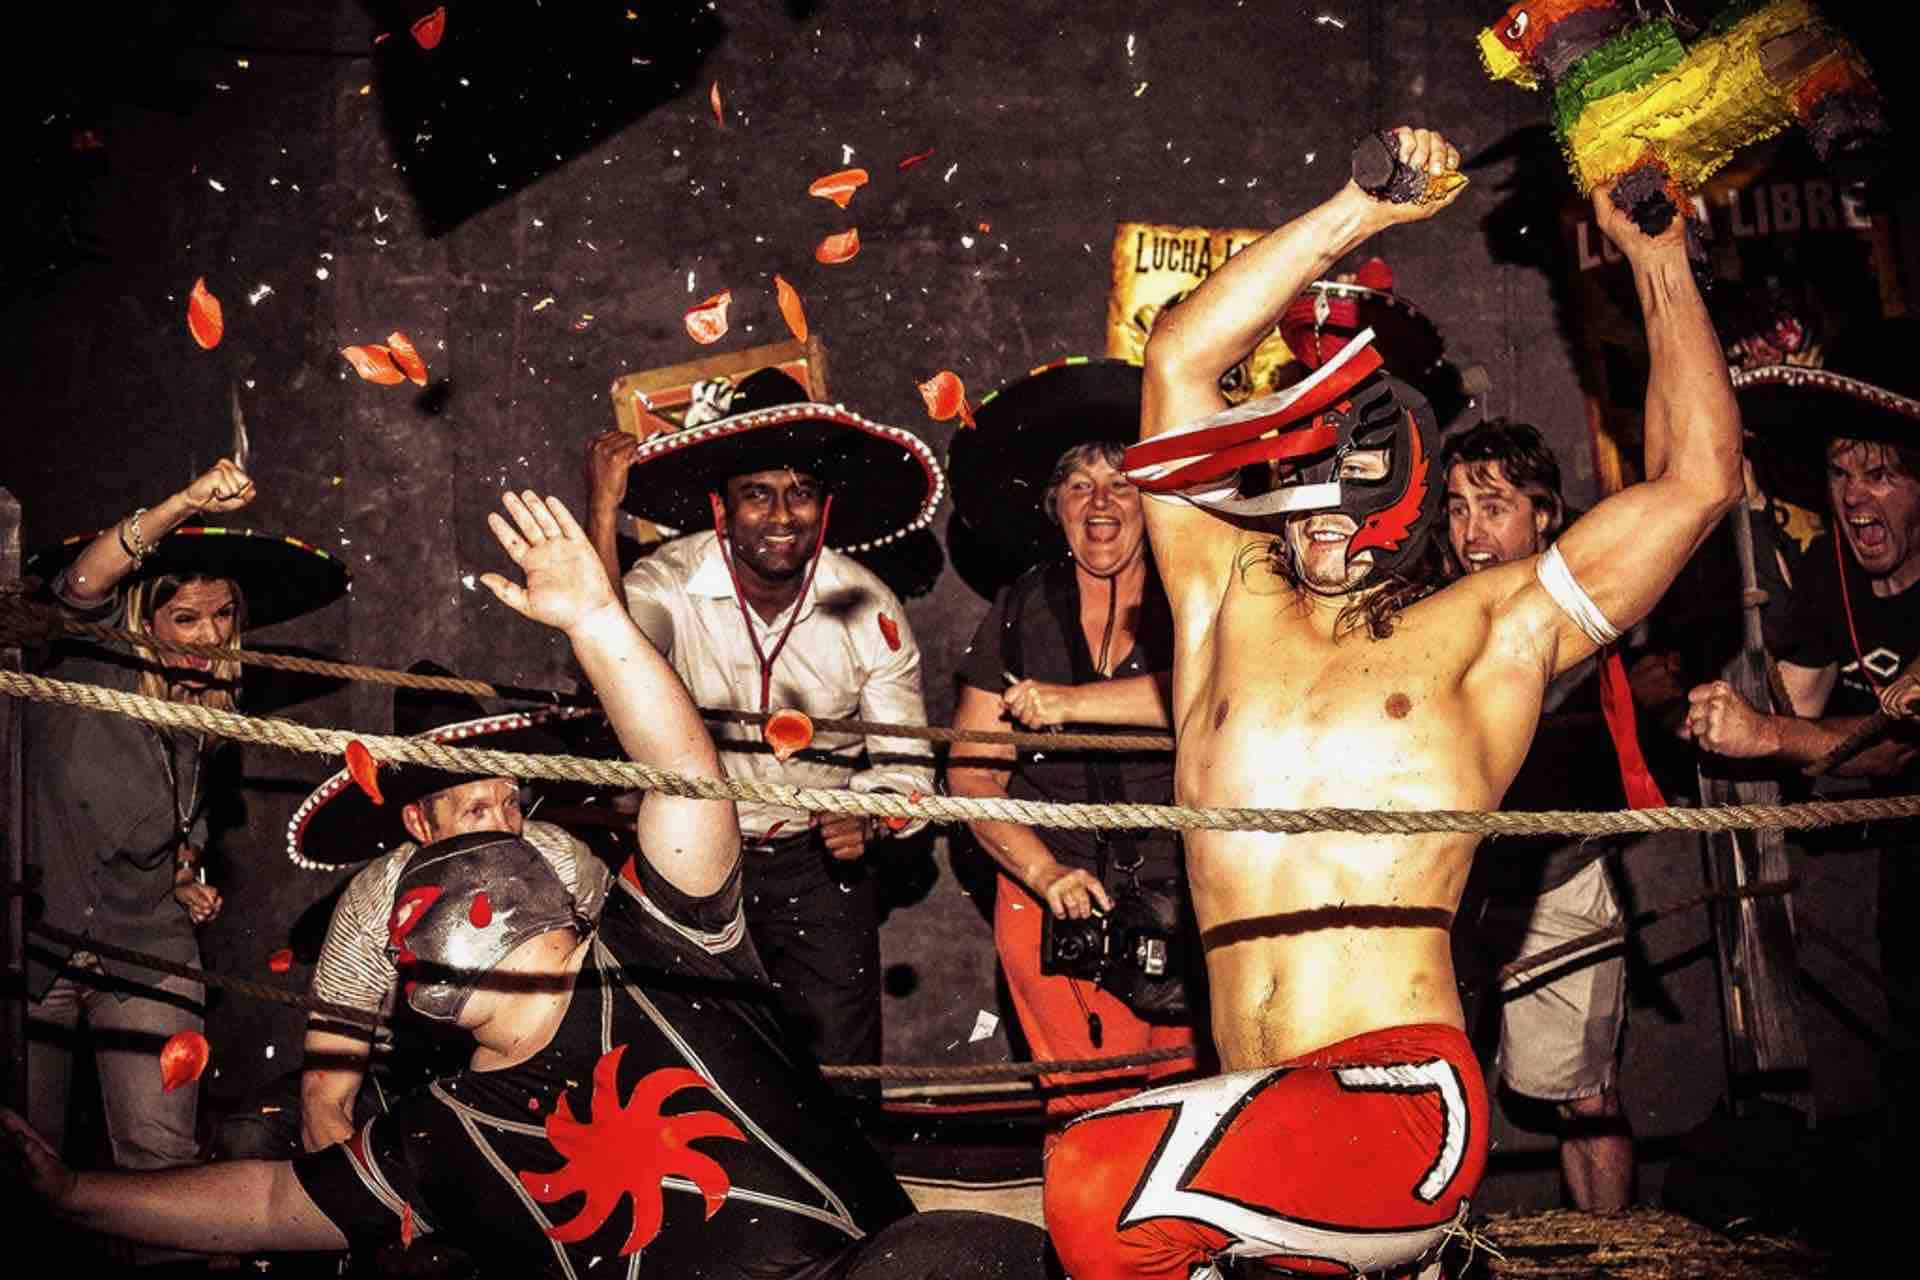 Lucha Libre Mexico City wrestler performing act